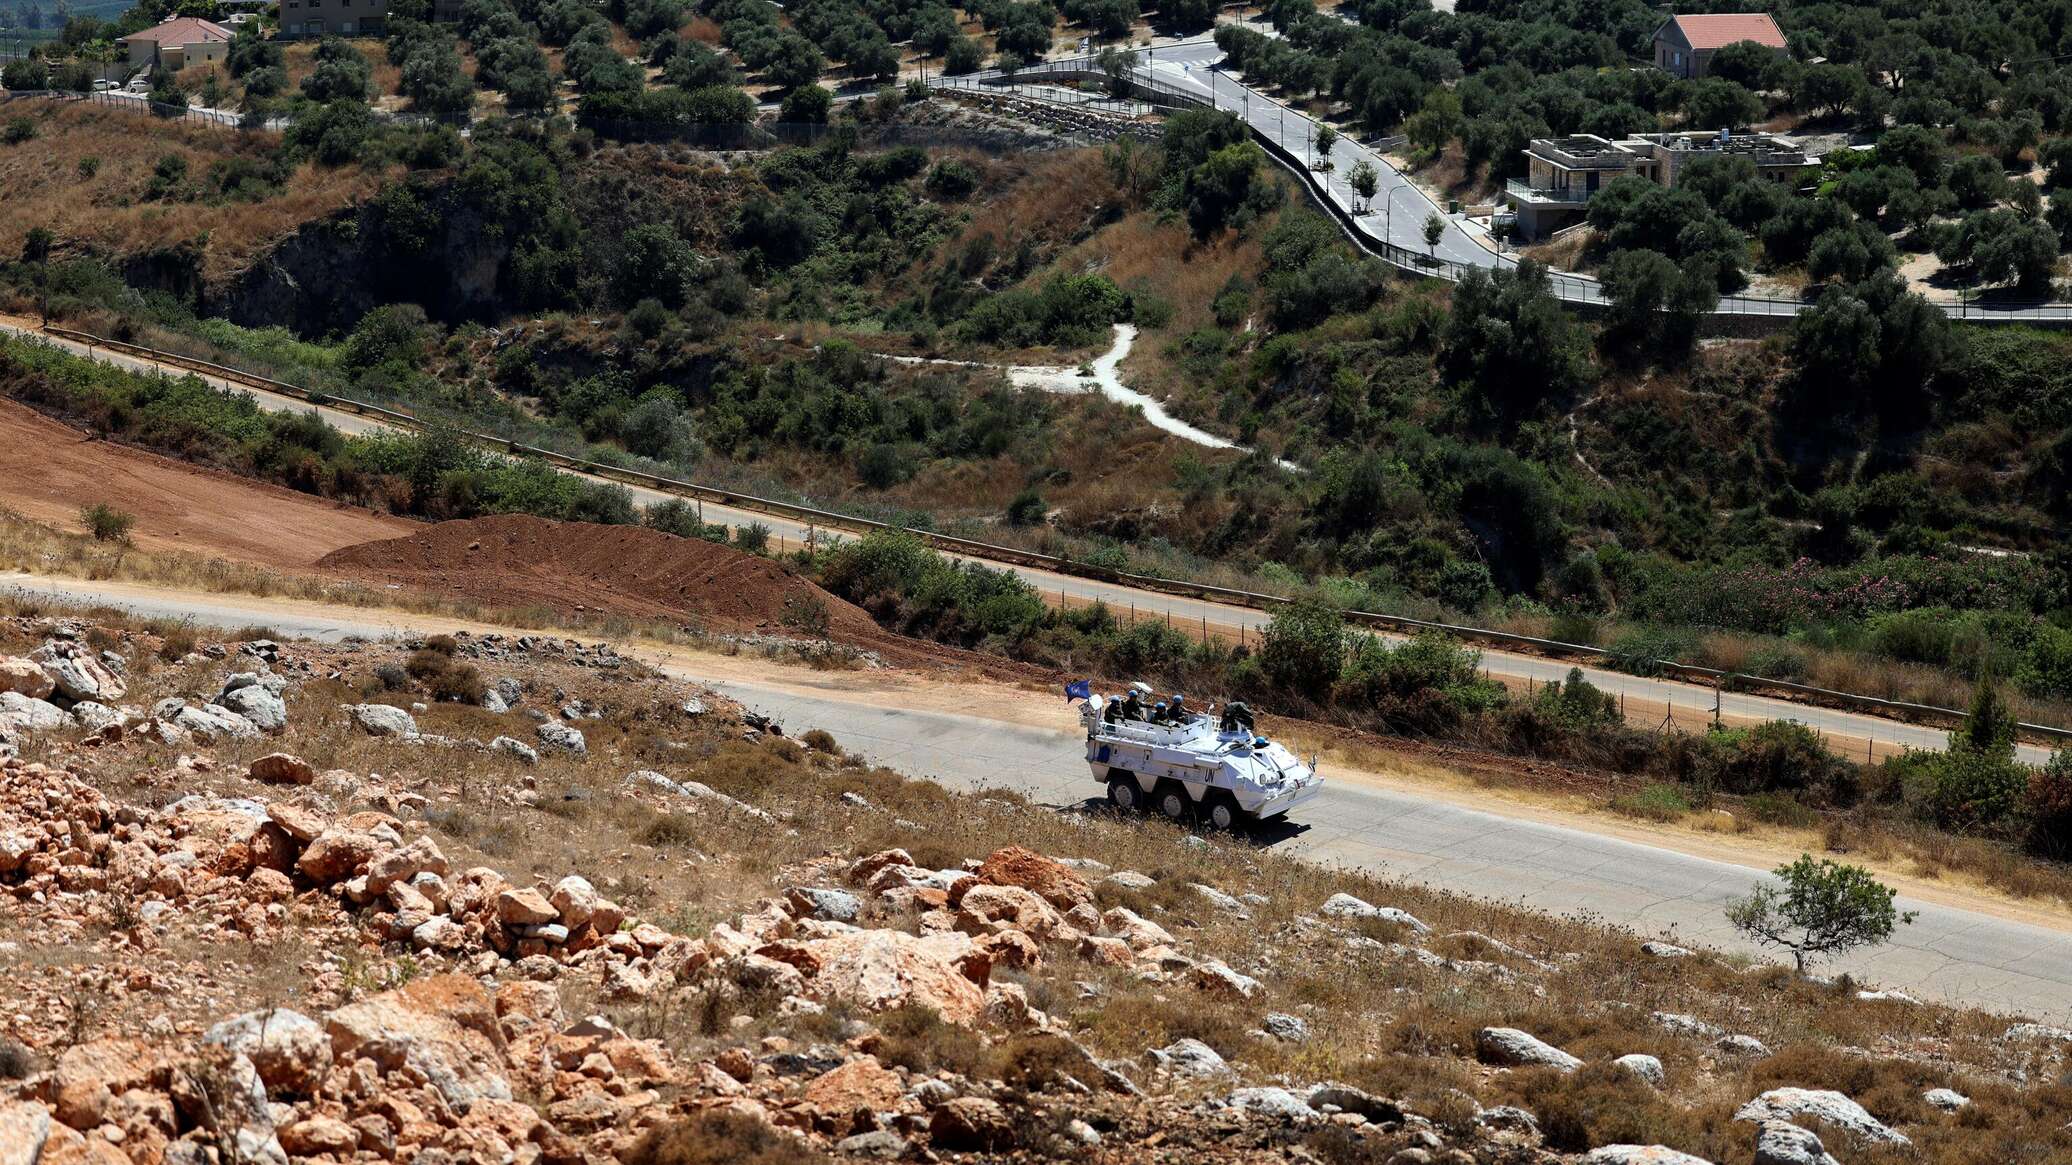 إسرائيل توجه رسالة عاجلة إلى الحكومة اللبنانية بعد هجوم "حزب الله"